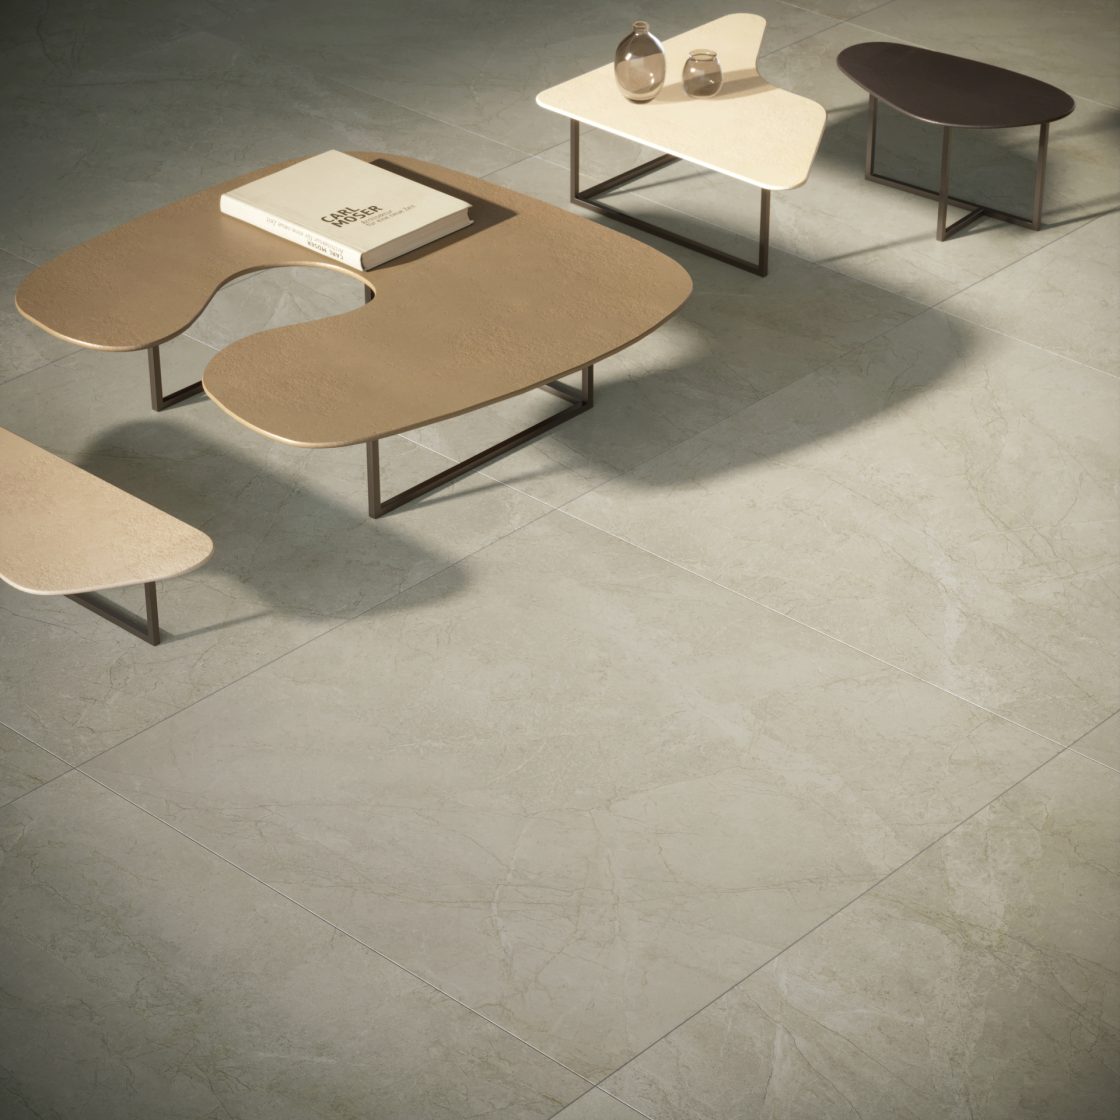 Área com revestimento que reproduz mármore no piso e quatro mesas com formatos orgânicos